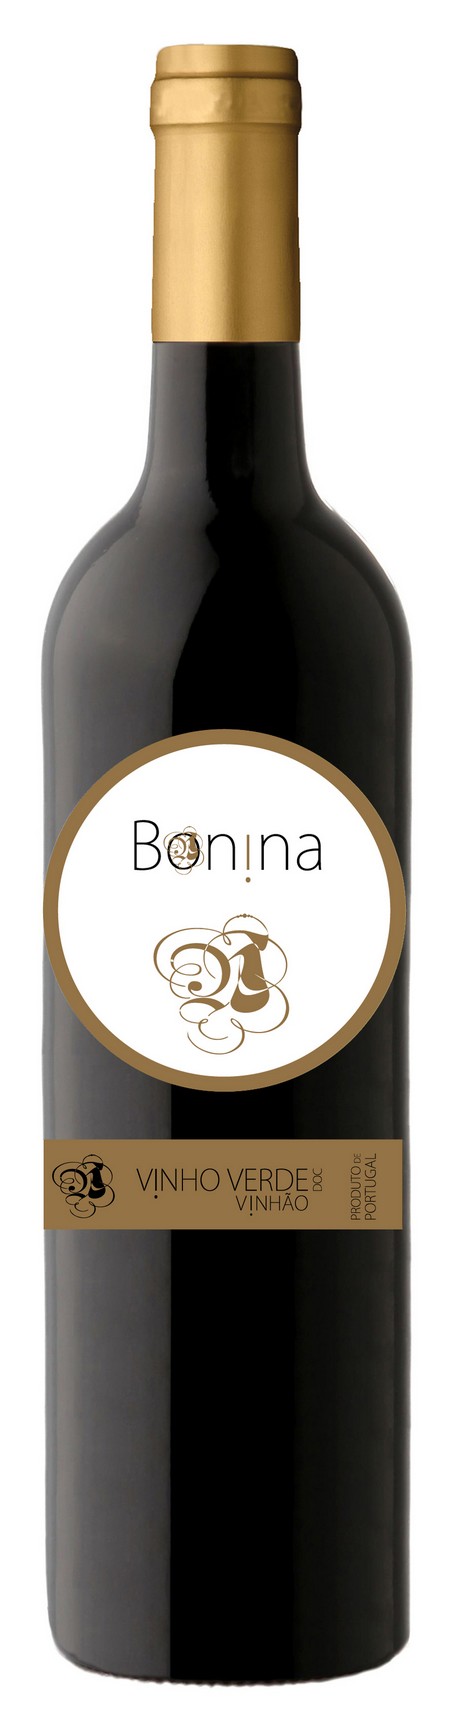 bonina-vinho-2014